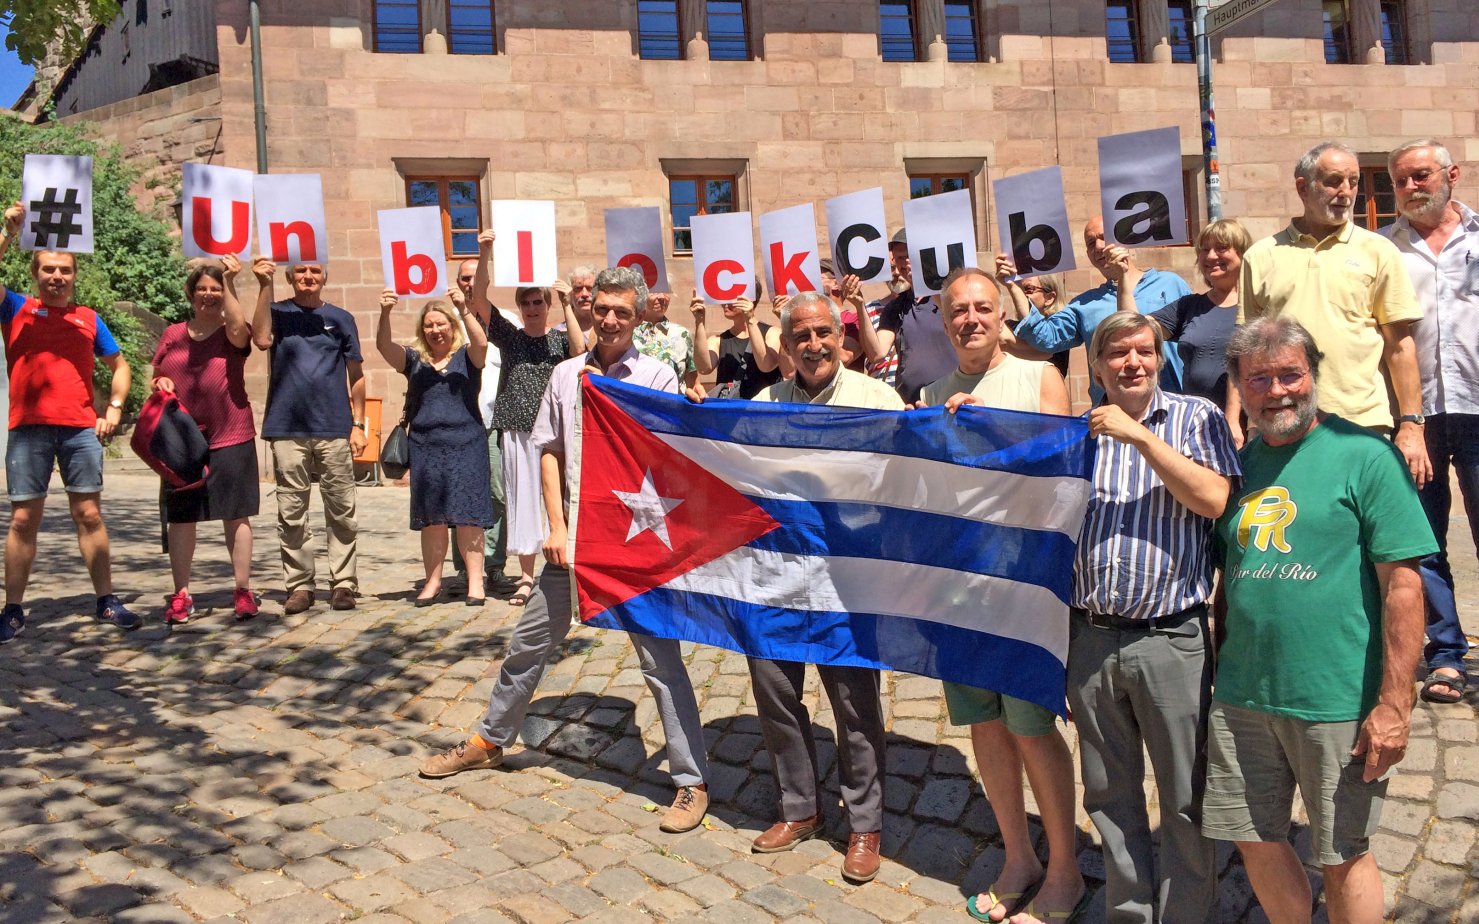 Die Bundesdelegierten fordern die Aufhebung der Blockade gegen Kuba